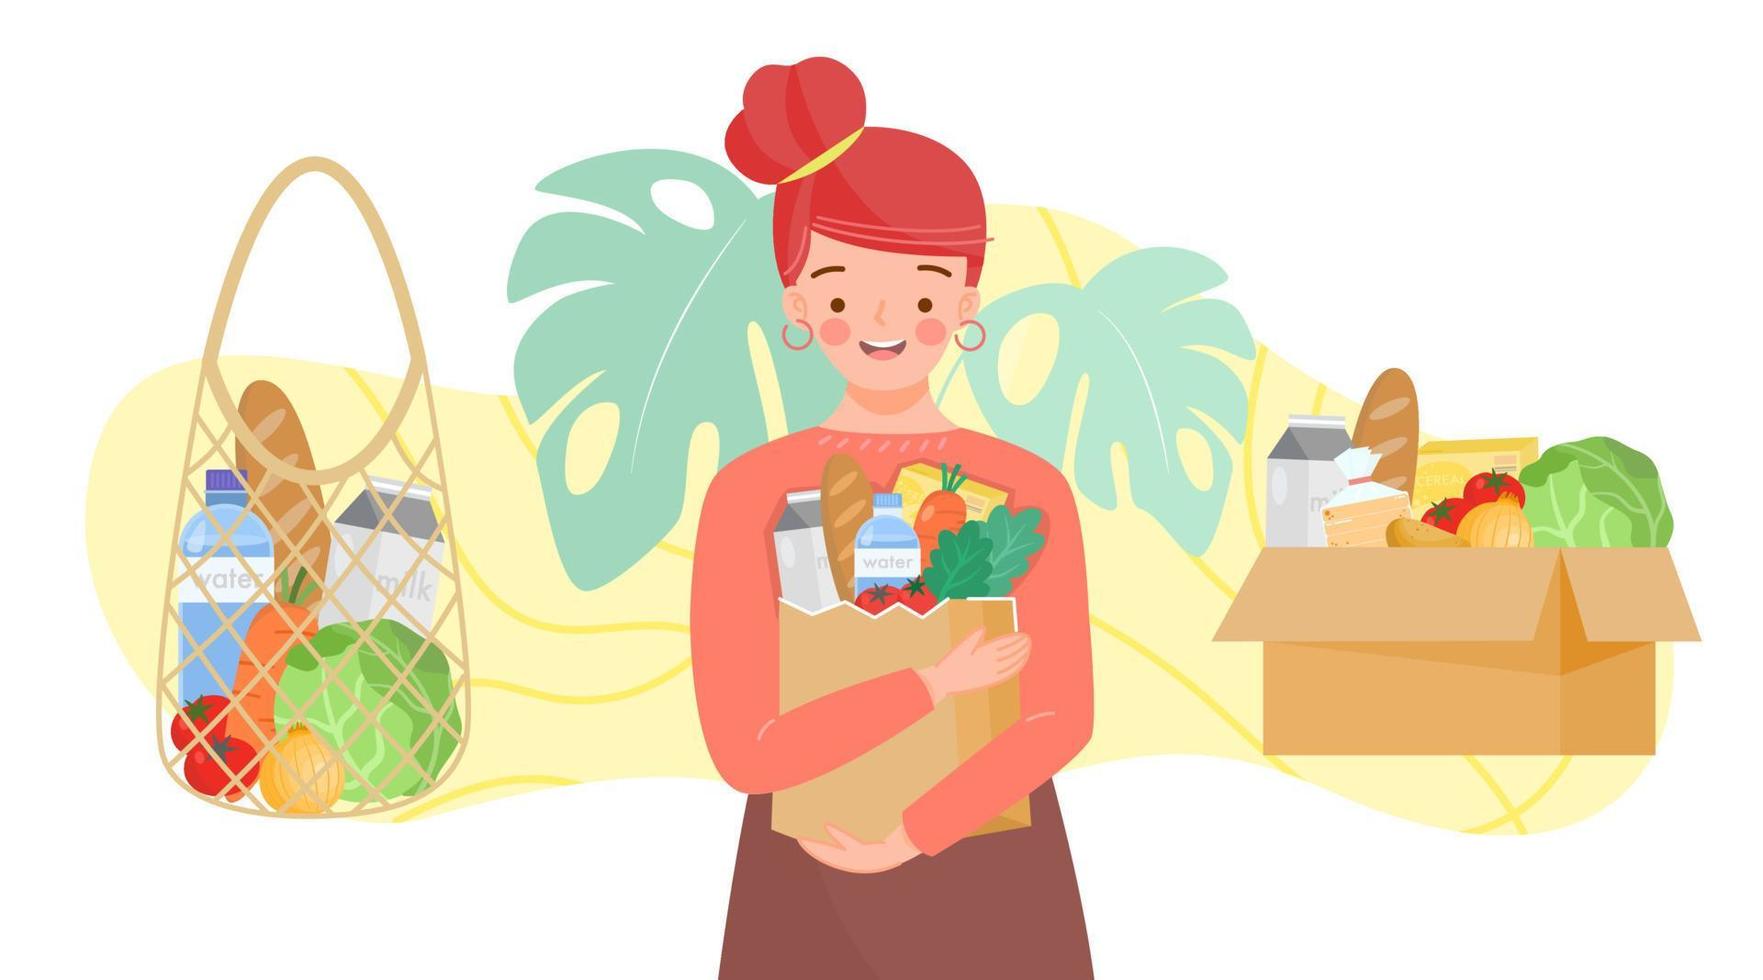 chica sosteniendo una bolsa de papel con un tendero verde. conjunto de bolsas reutilizables y caja de cartón de frutas, verduras, leche, pan. productos alimenticios en reutilización eco y paquete de papel.productos orgánicos de granja. vector